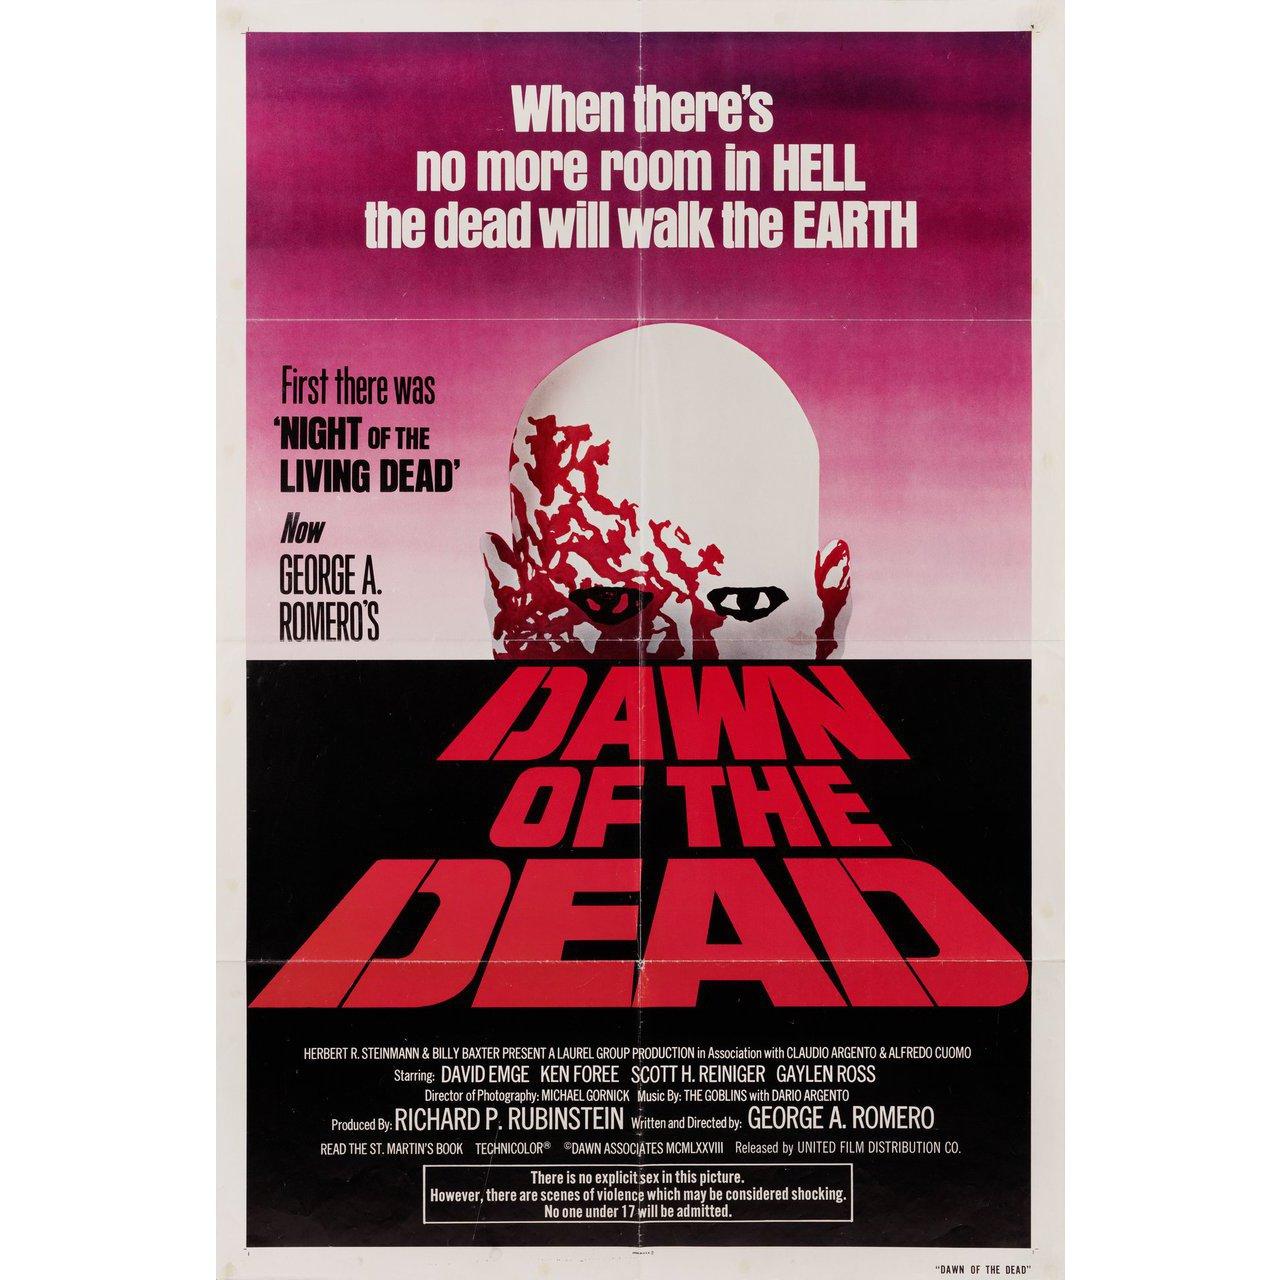 Original 1979 U.S. Plakat für den Film Dawn of the Dead von George A. Romero mit David Emge / Ken Foree / Scott H. Reiniger / Gaylen Ross. Sehr guter Zustand, gefaltet mit Nadellöchern und anderen Gebrauchsspuren. Viele Originalplakate wurden